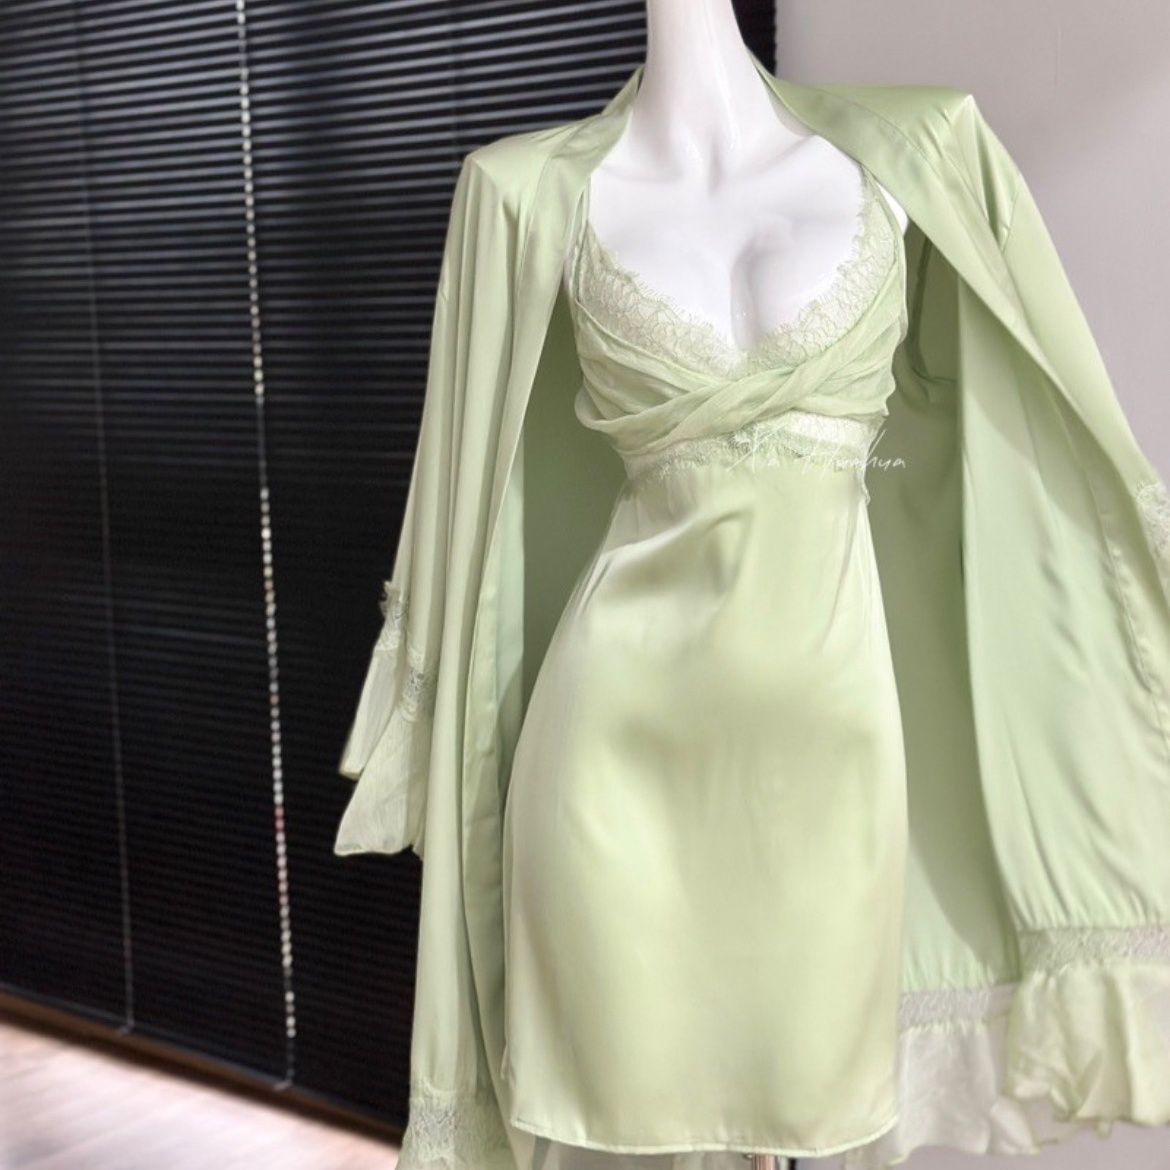 24夏款性感睡衣露丝同款两件套睡裙吊带睡袍居家绿野仙踪蕾丝套装